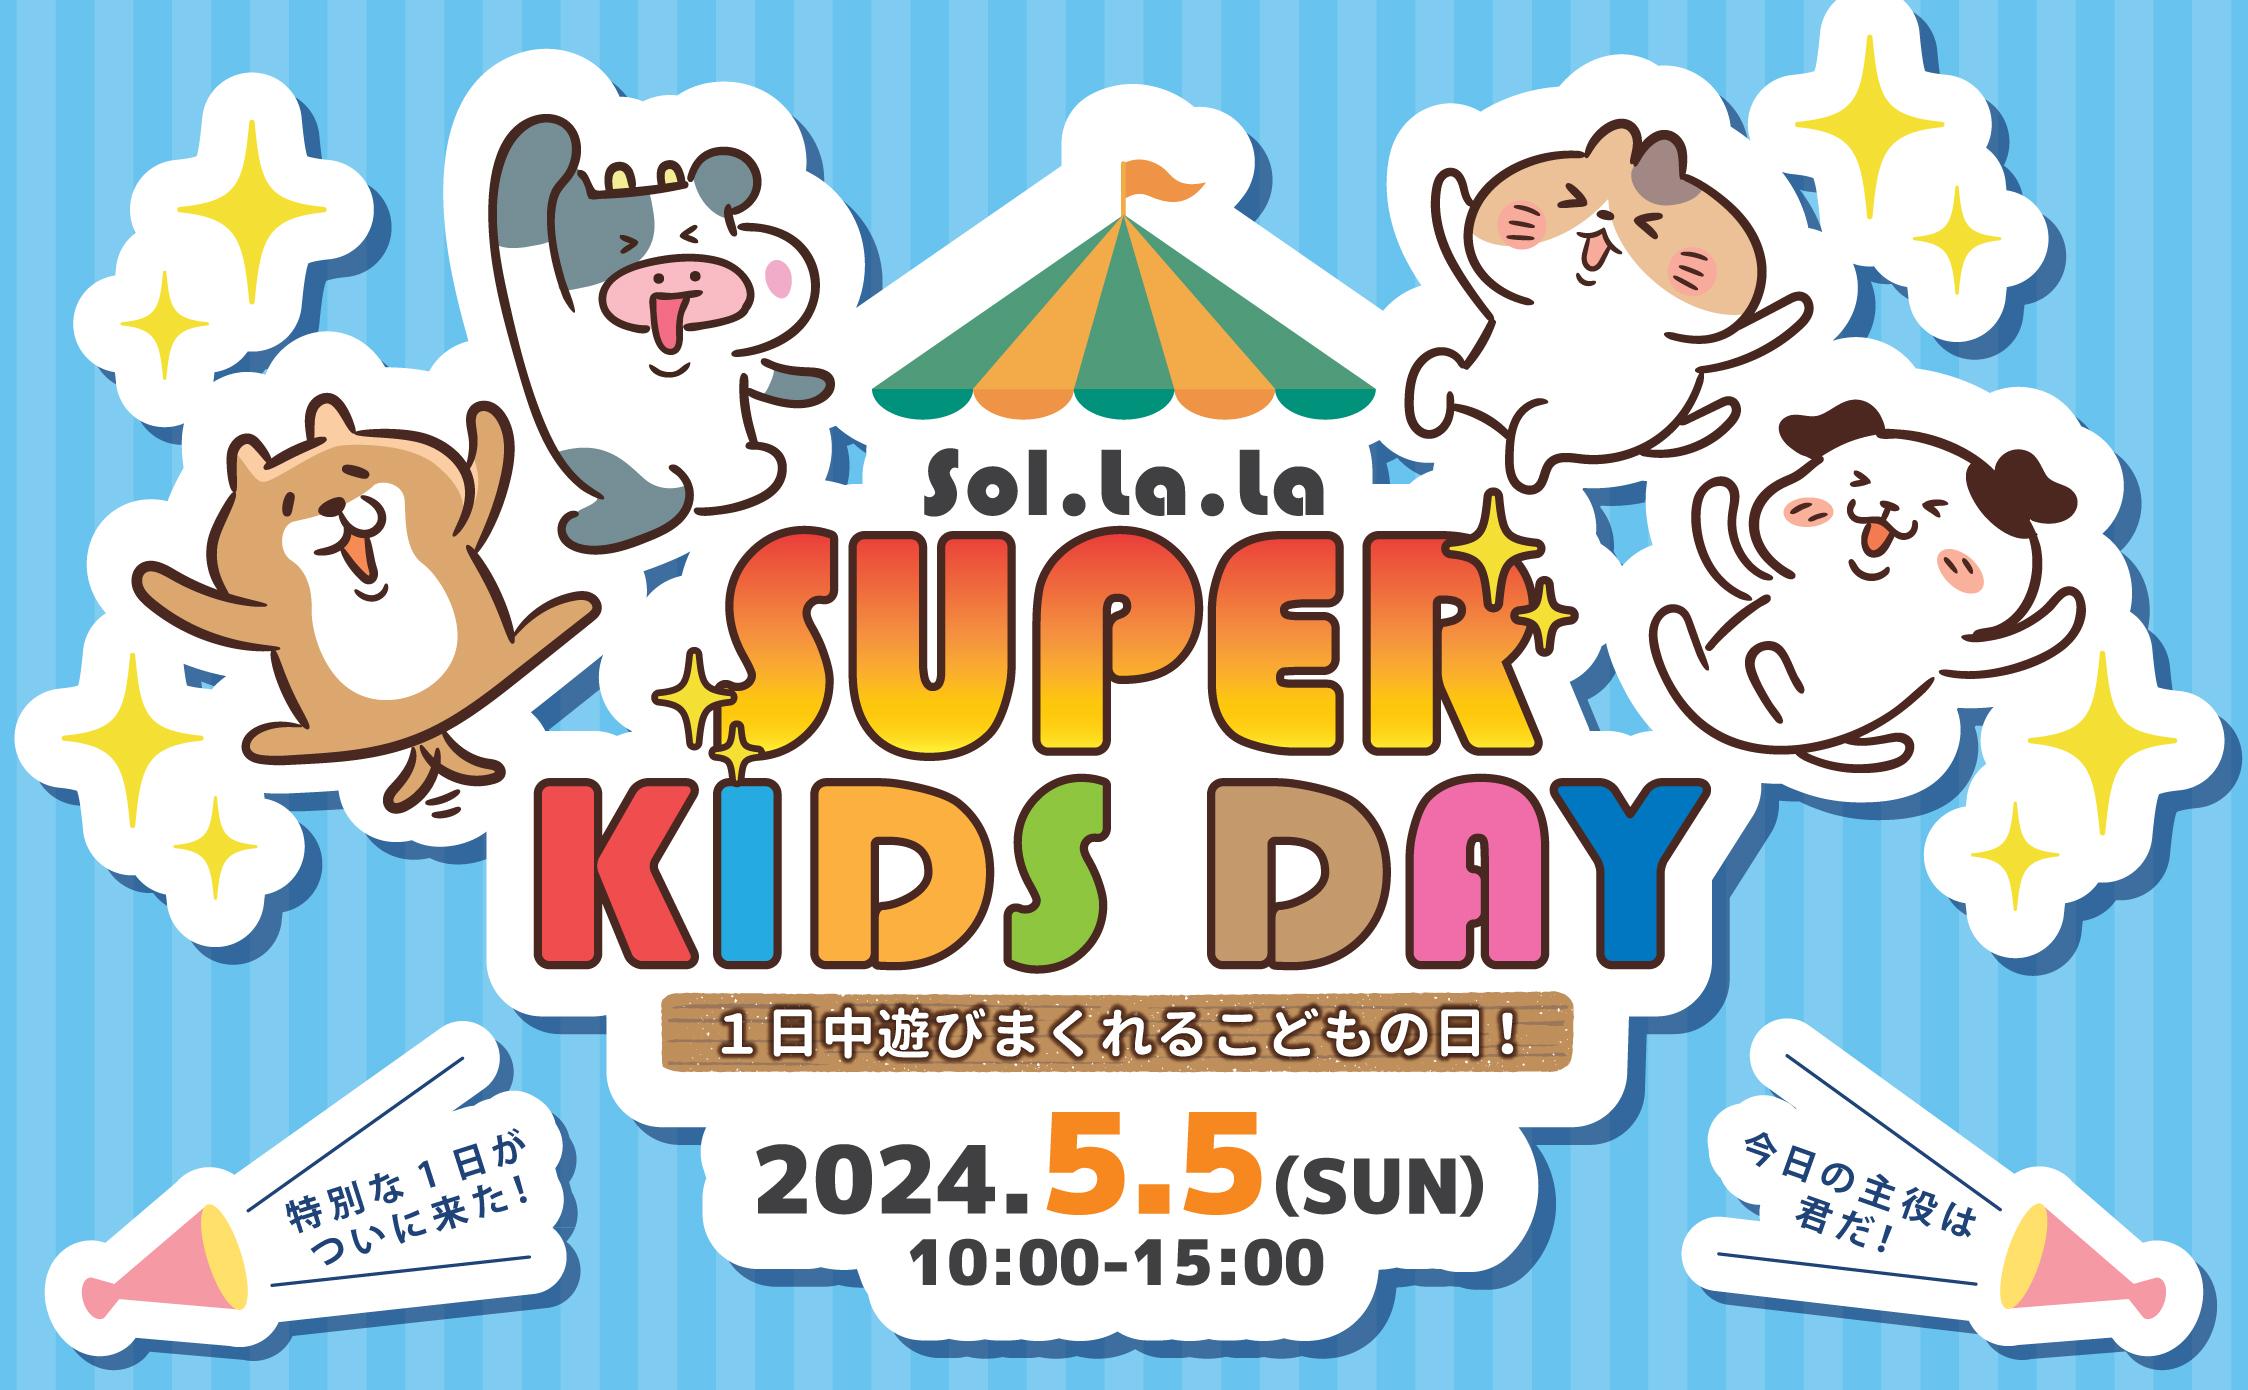 5月5日（日曜日）は「Sol・la・la SUPER KIDS DAY」を開催します！